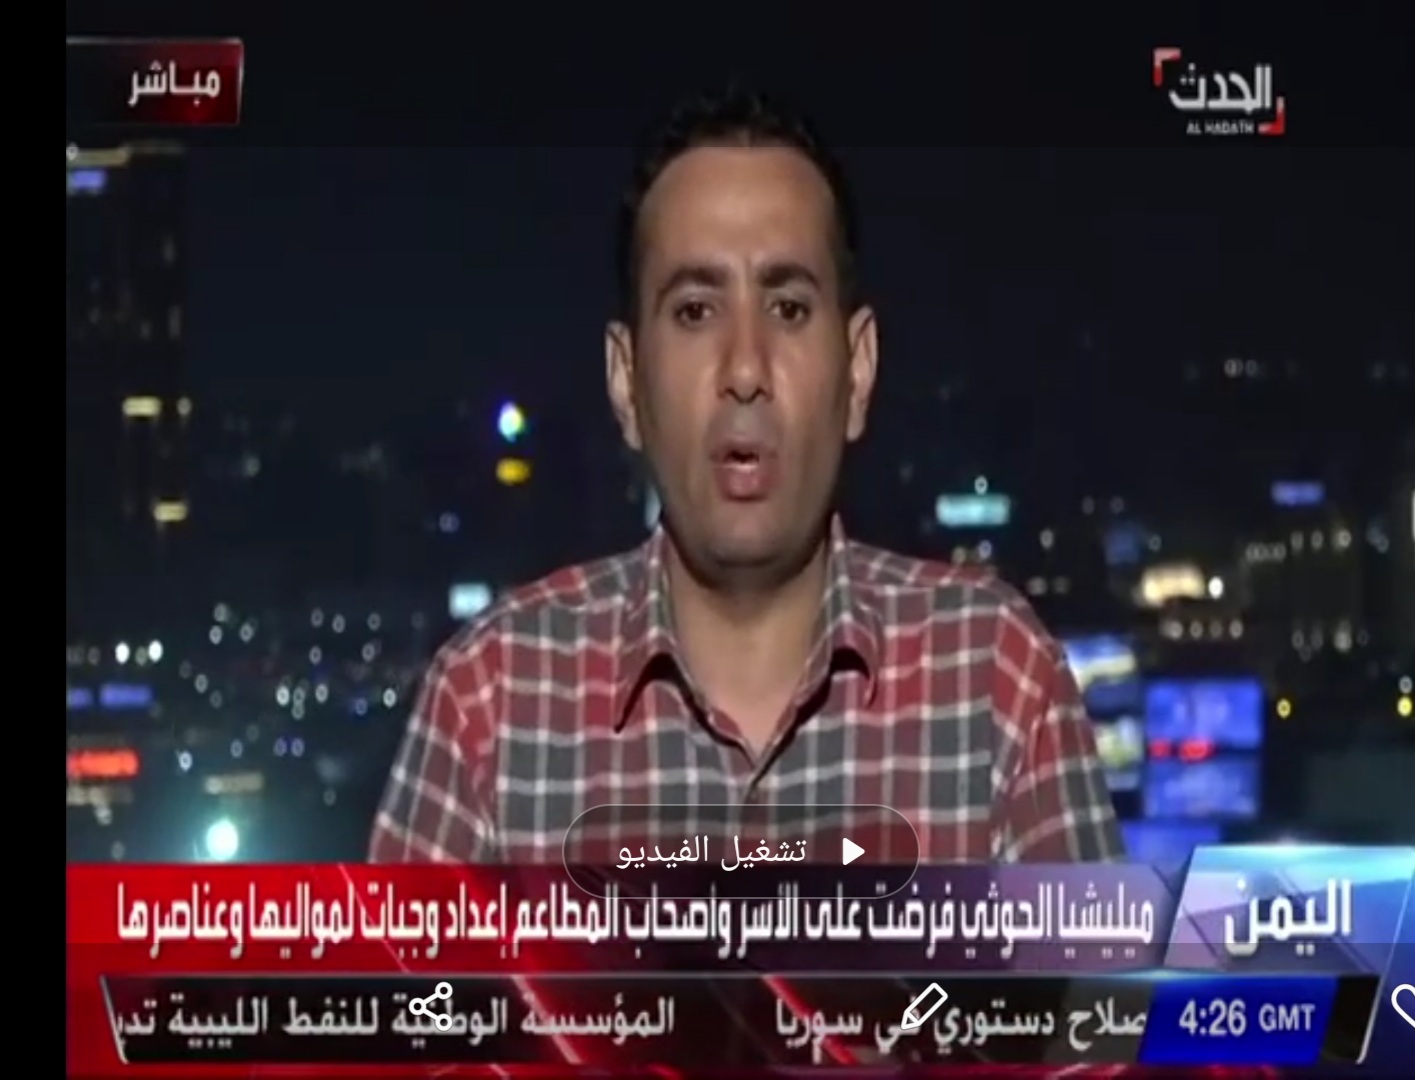 على الهواء مباشرة قناة العربية توبخ مسؤولا يمنيا رئاسيا فيديو